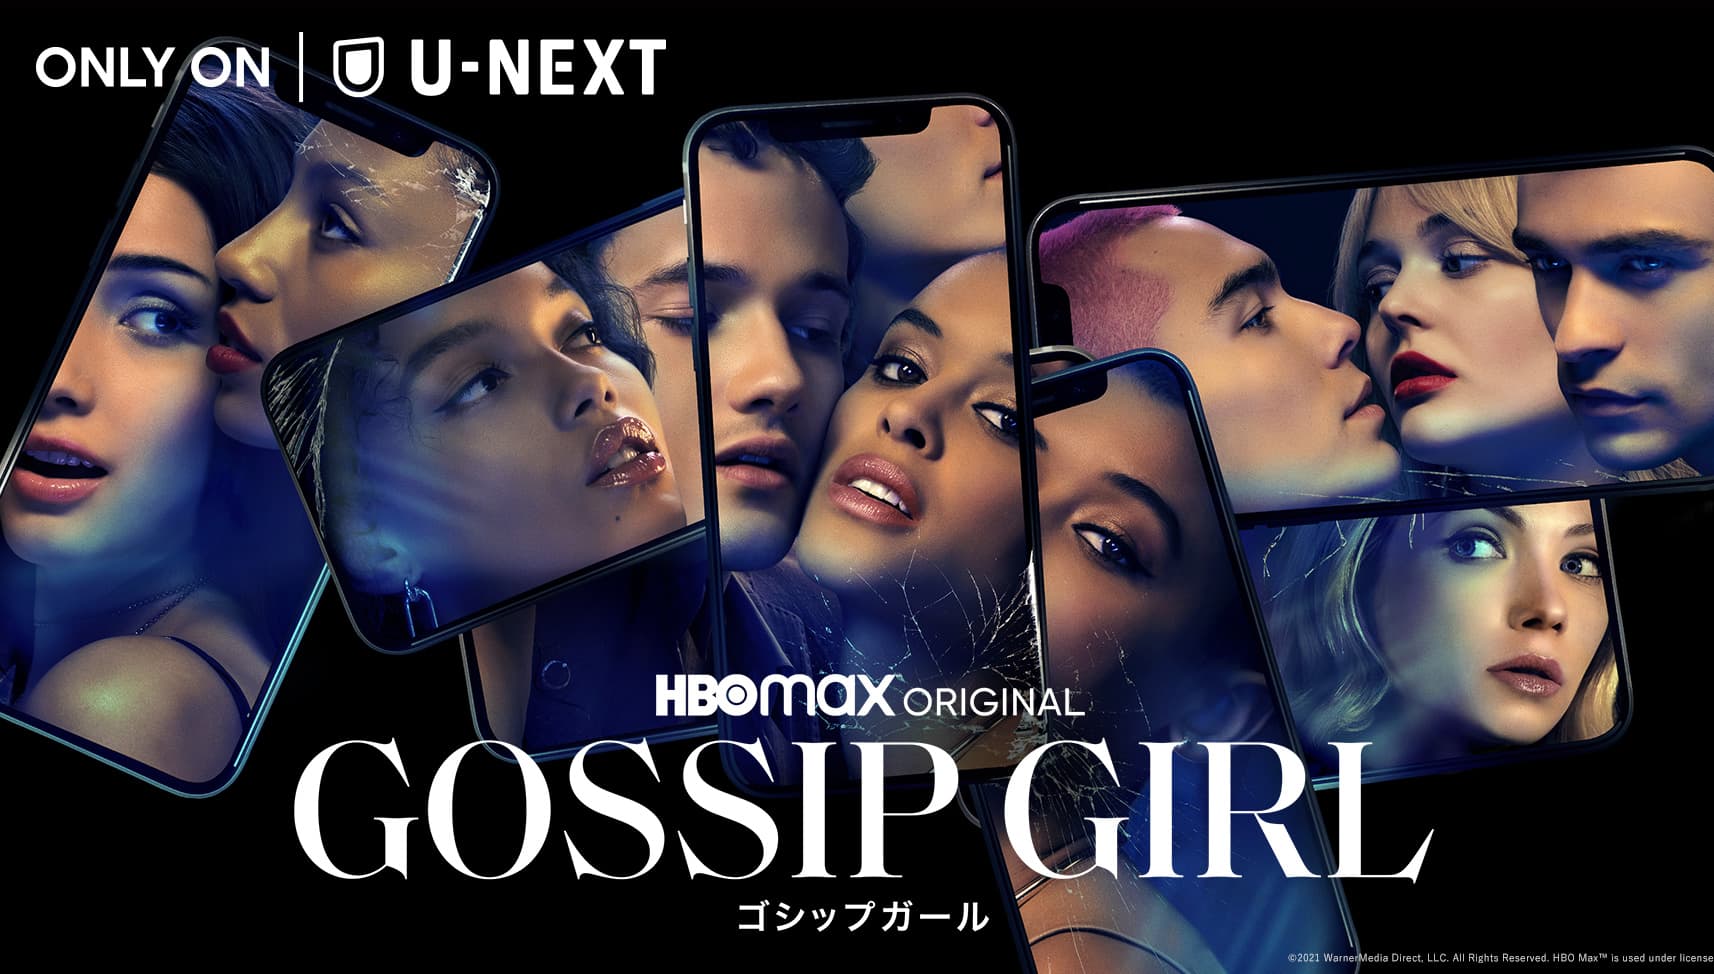 ONLY ON U-NEXT HBOmax ORIGINAL GOSSIP GIRL ゴシップガール